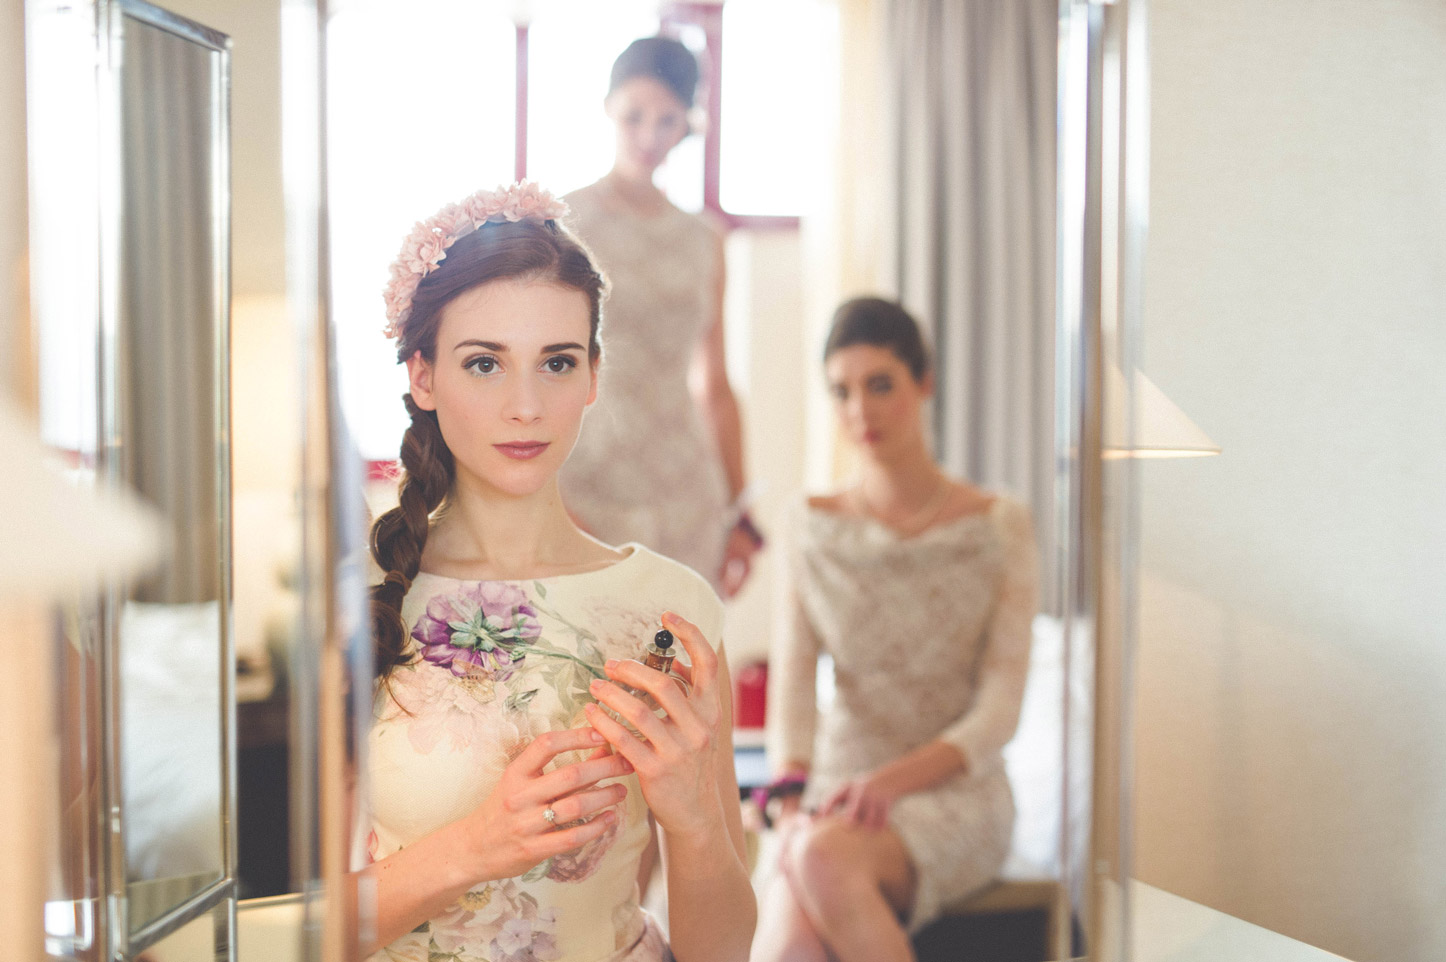 Brautkleid mit Blumenprint - vor Spiegel